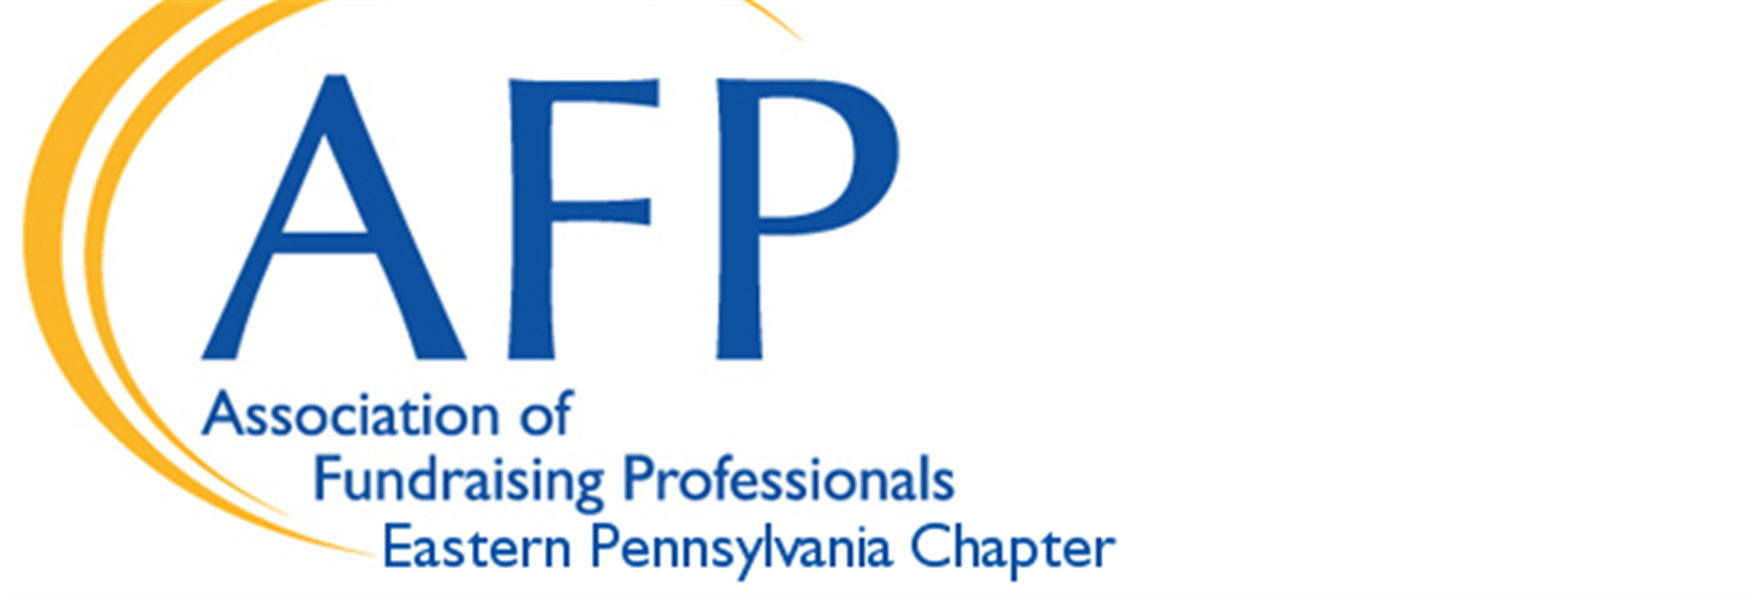 fbfc79f9-64ad-46cf-b5a5-3998e2aa33ff_AFP - EPA Logo.php.png